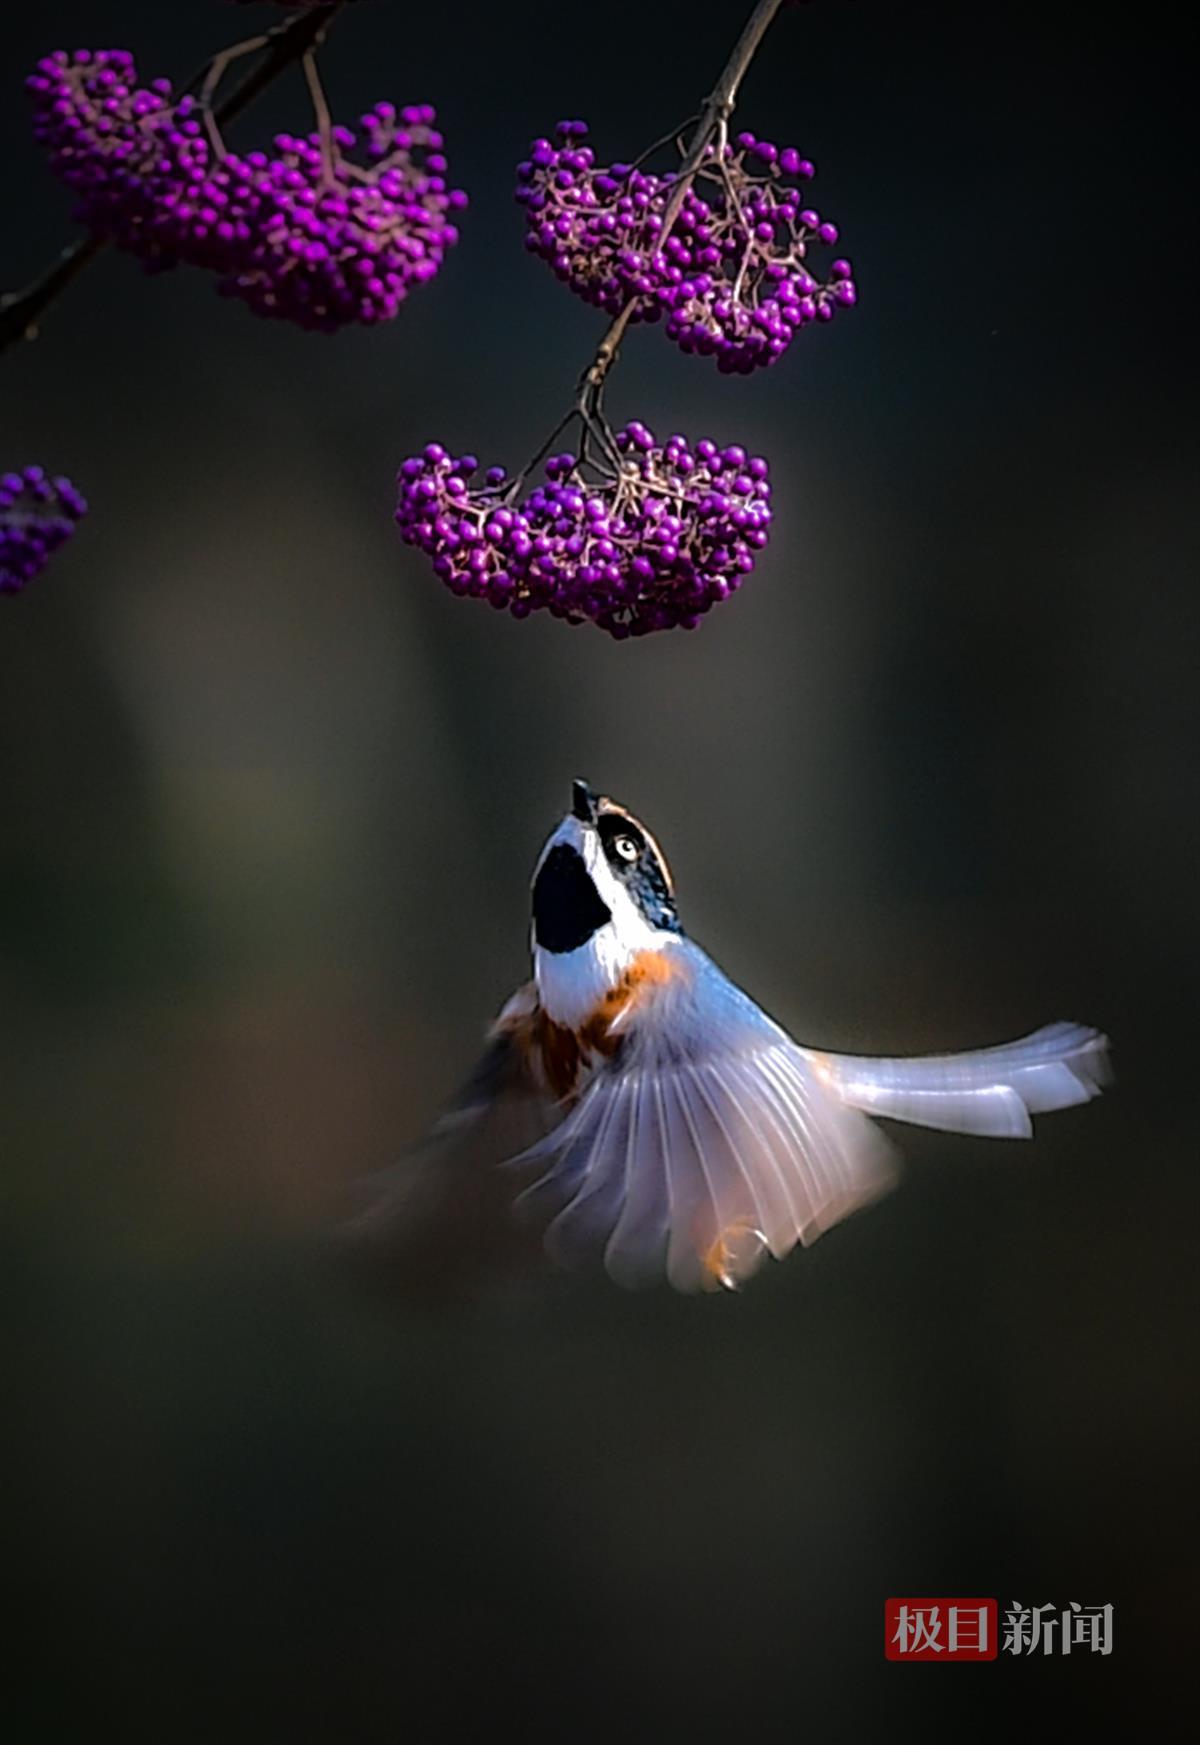 武汉植物园内,摄影爱好者捕捉到小鸟展翅飞翔的精彩瞬间 